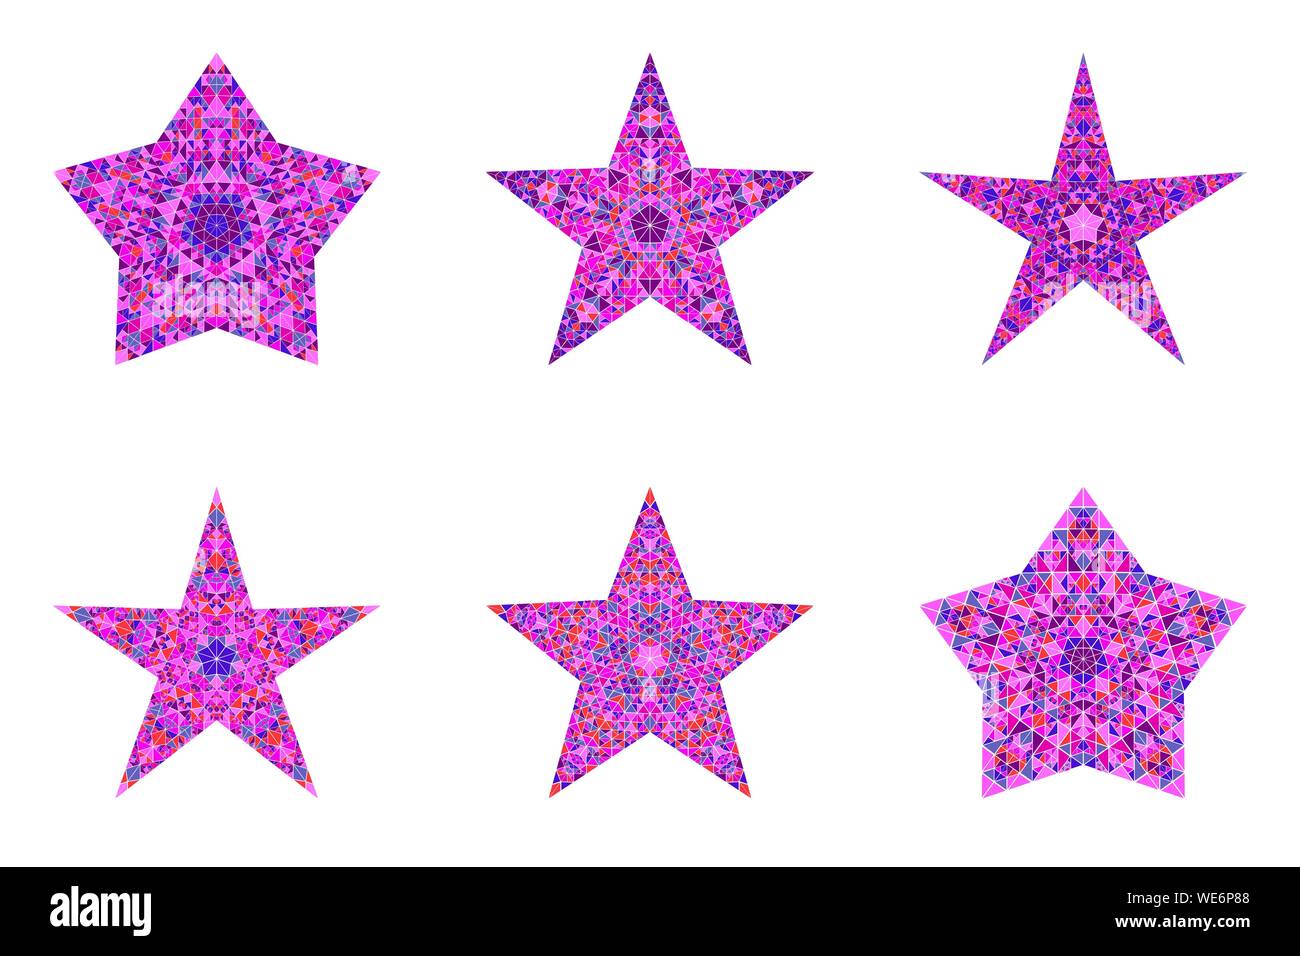 Isolierte abstrakte Mosaik Pentagramm star Symbolsatz-geometrischen Ornamenten geometrischer Vektor Element aus Dreiecken Stock Vektor